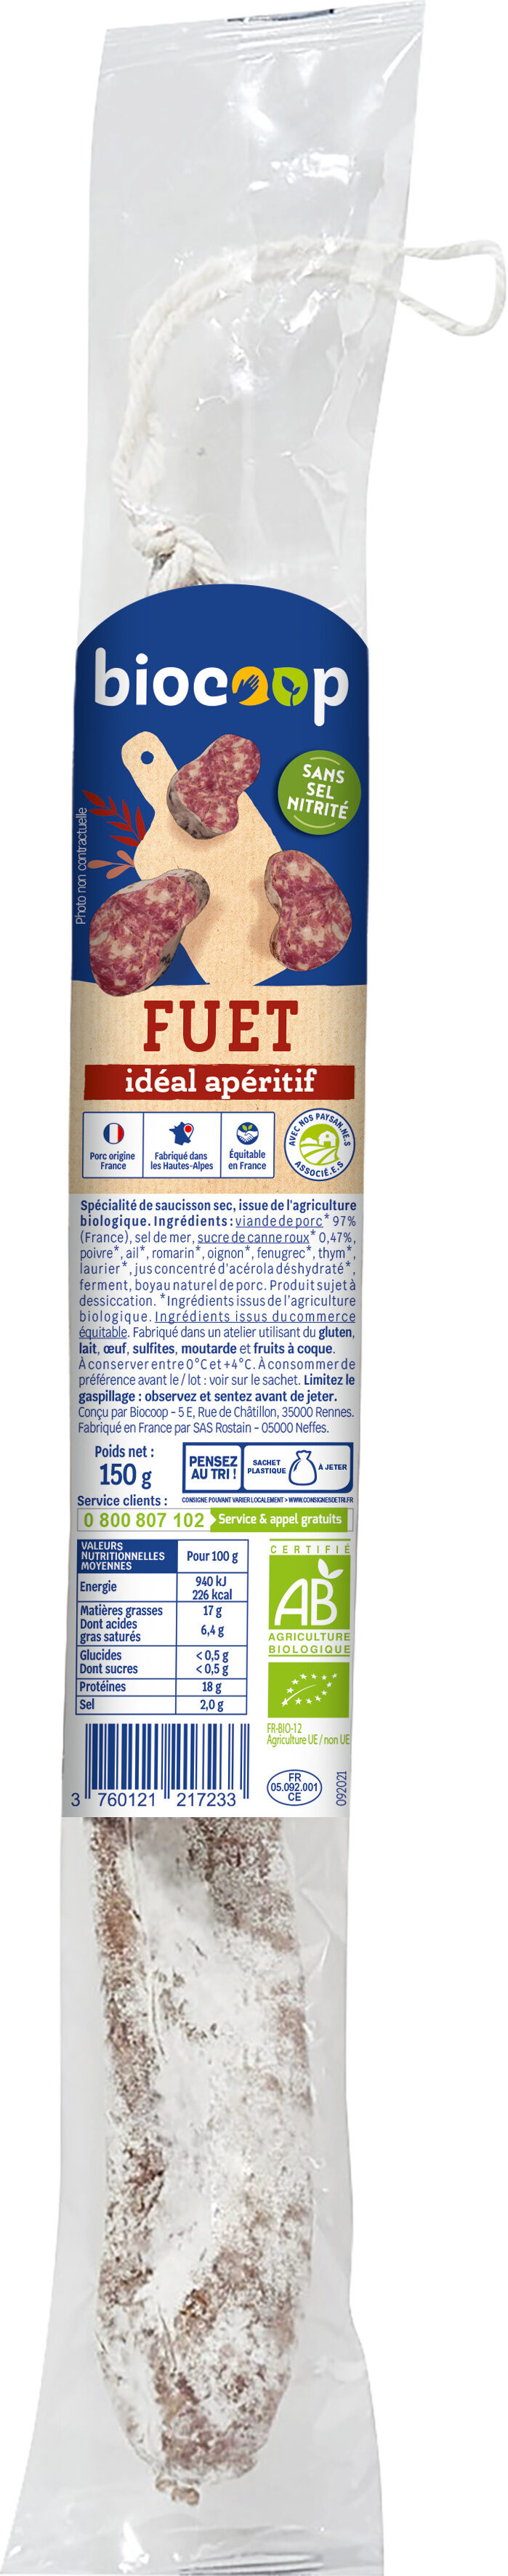 Fuet idéal apéritif - Product - fr